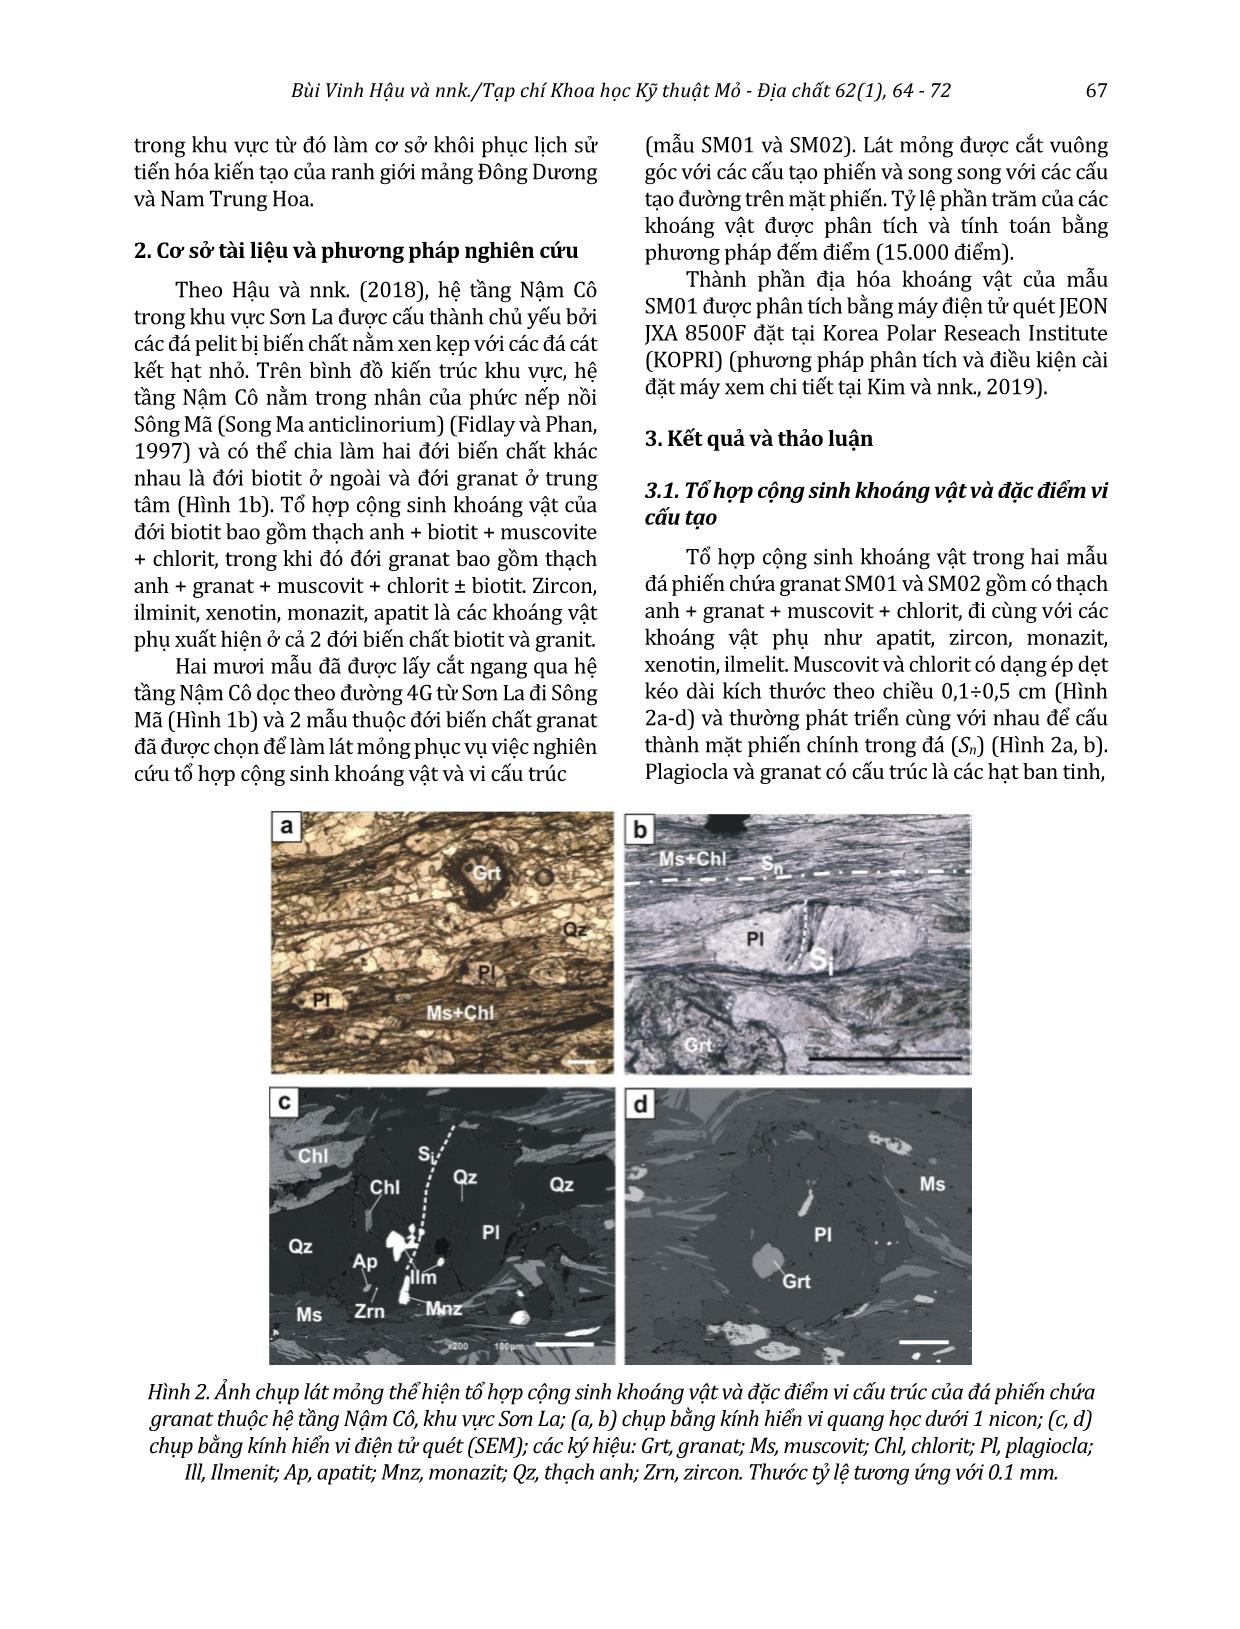 Đặc điểm thành phần thạch học và cấu trúc các đá phiến chứa granat của hệ tầng Nậm Cô, khu vực Sơn La, đới khâu Sông Mã, Tây Bắc Việt Nam trang 4